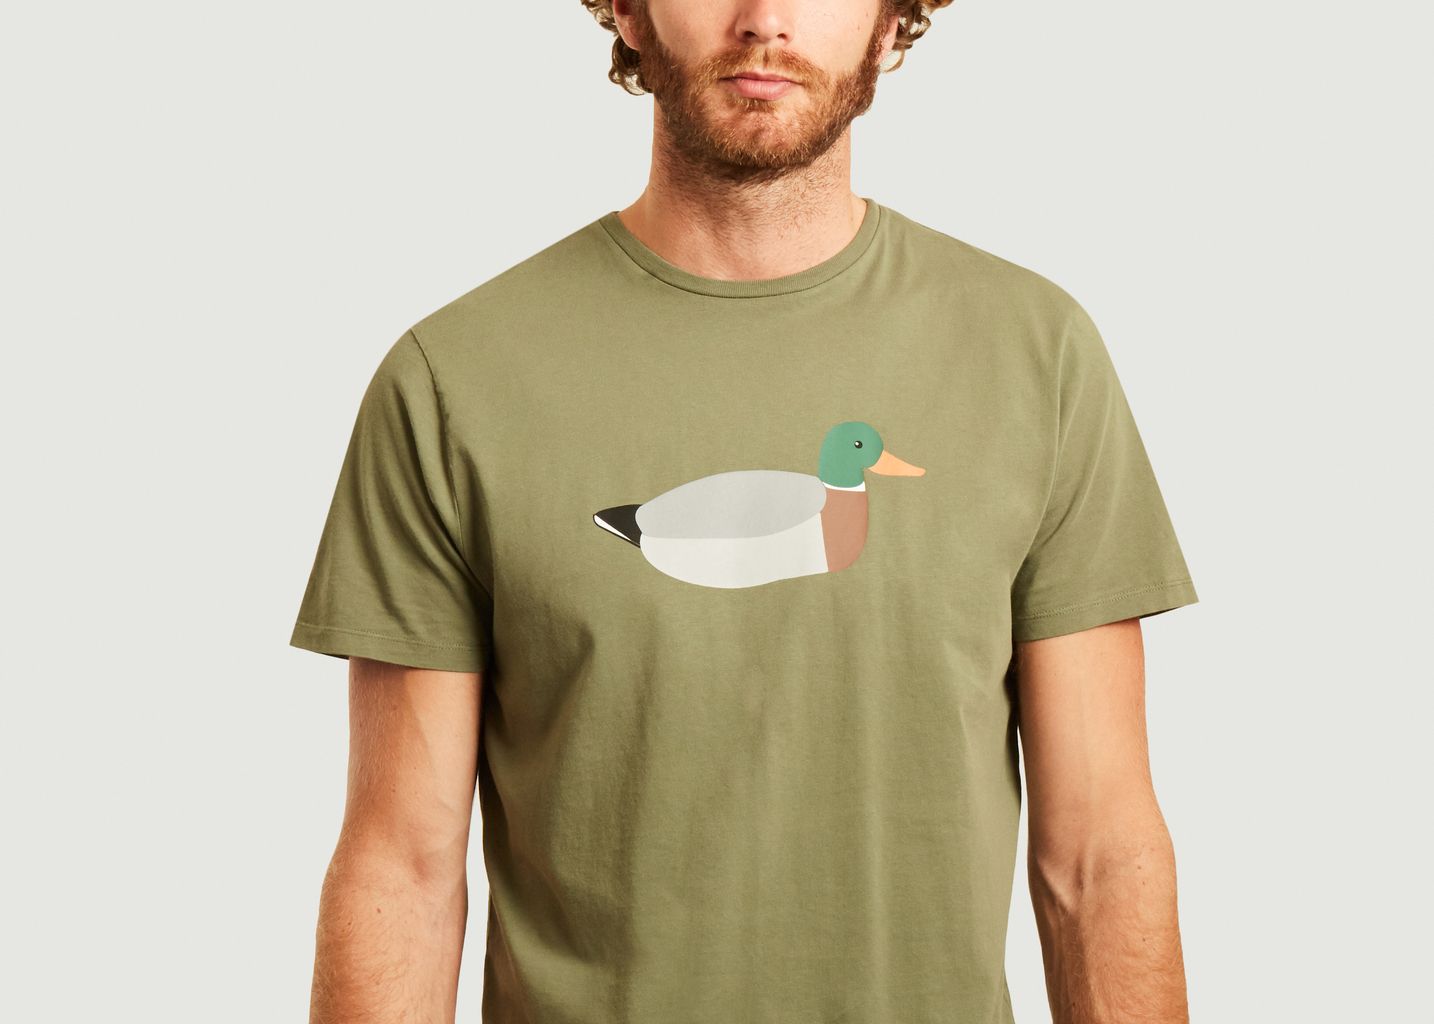 T-shirt Duck hunt en coton biologique - Edmmond Studios